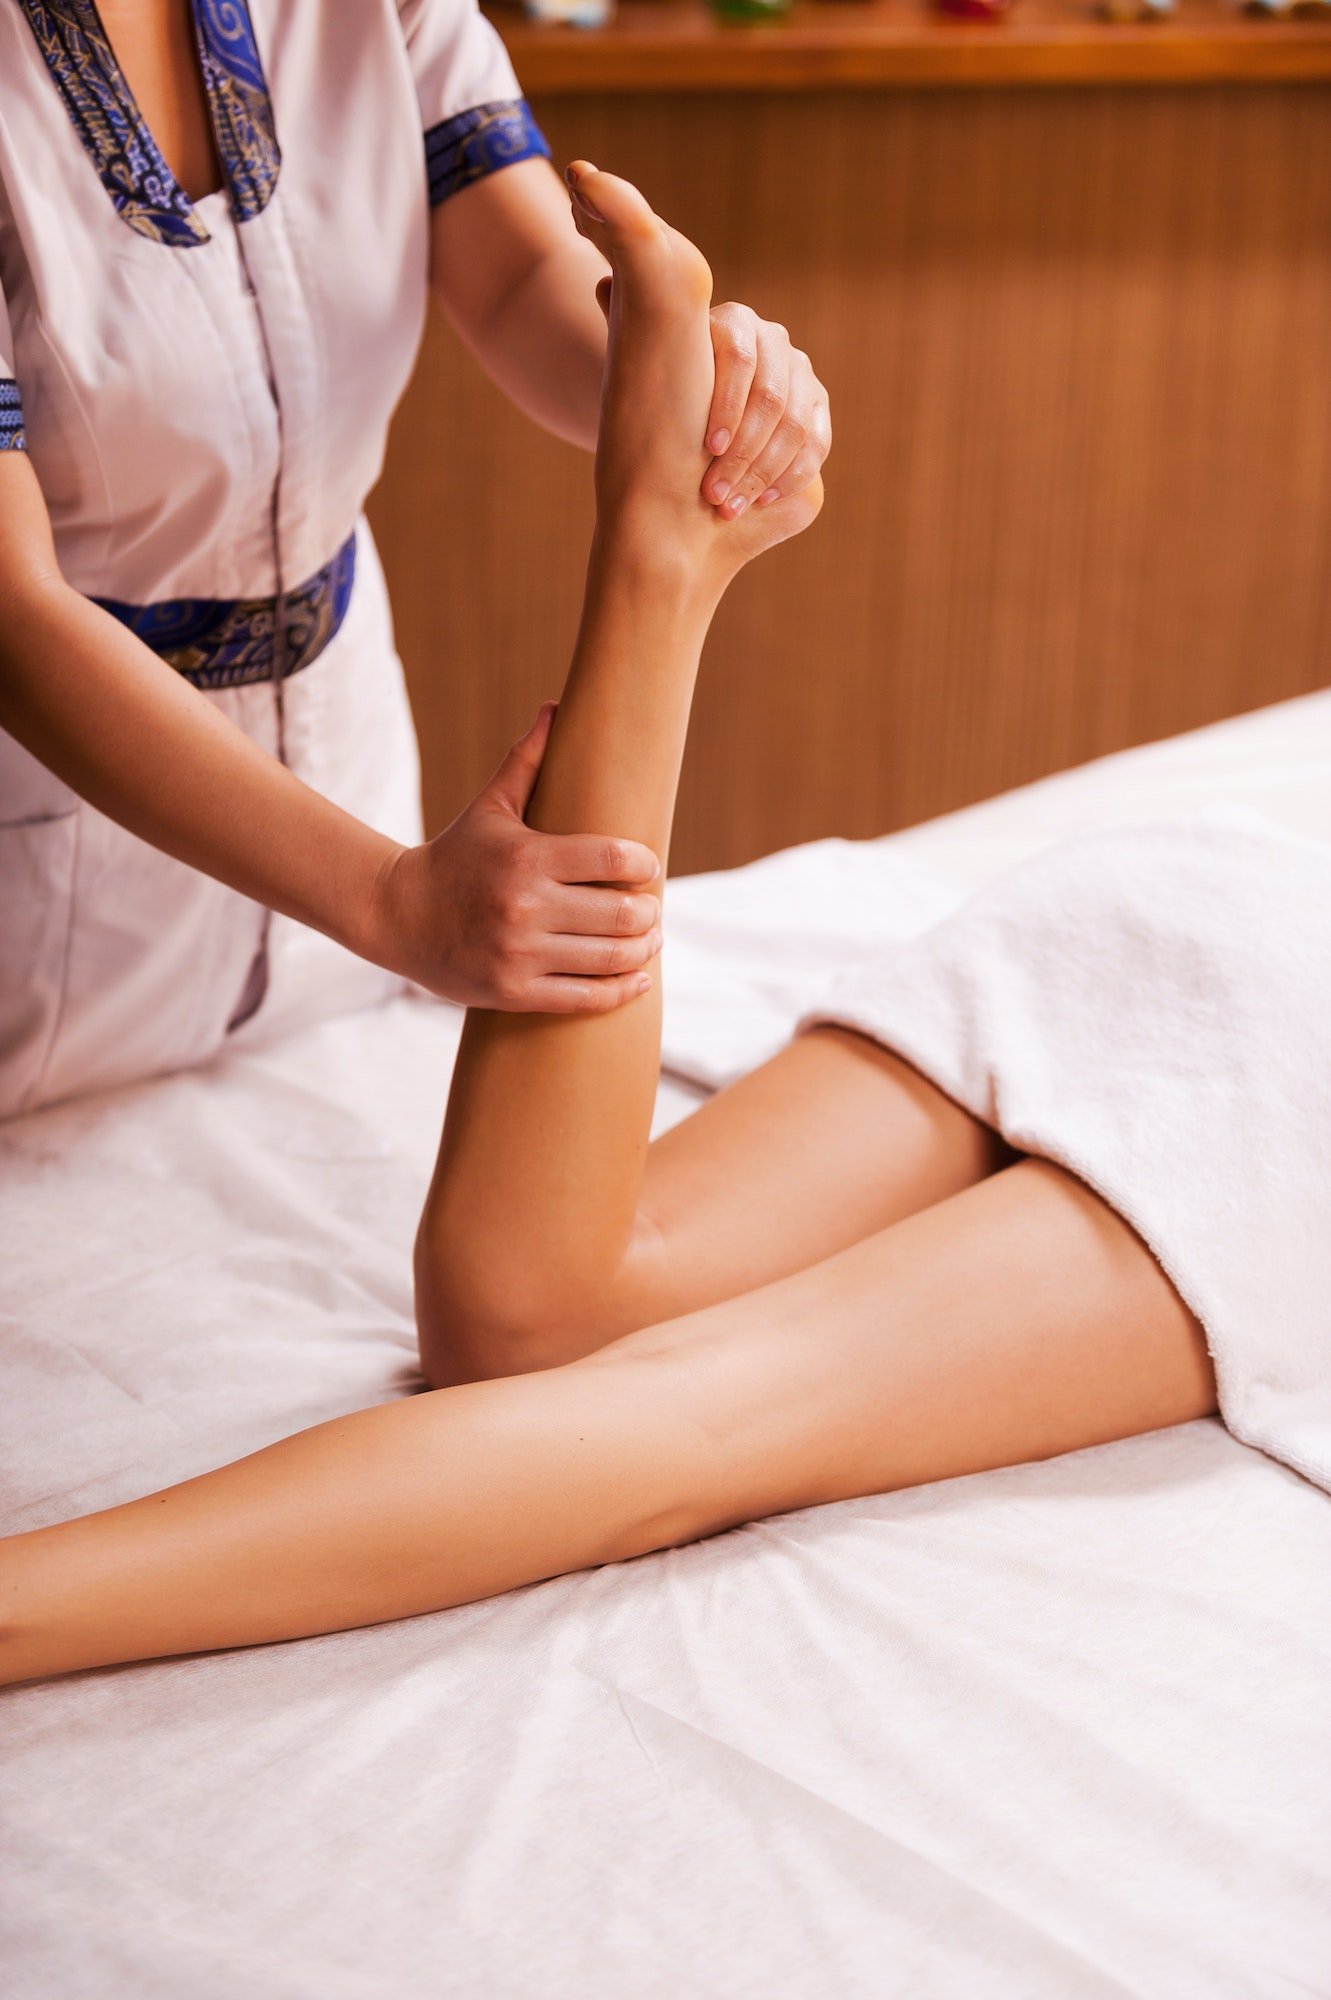 Massaging legs. Top view of massage therapist massaging beautiful female leg